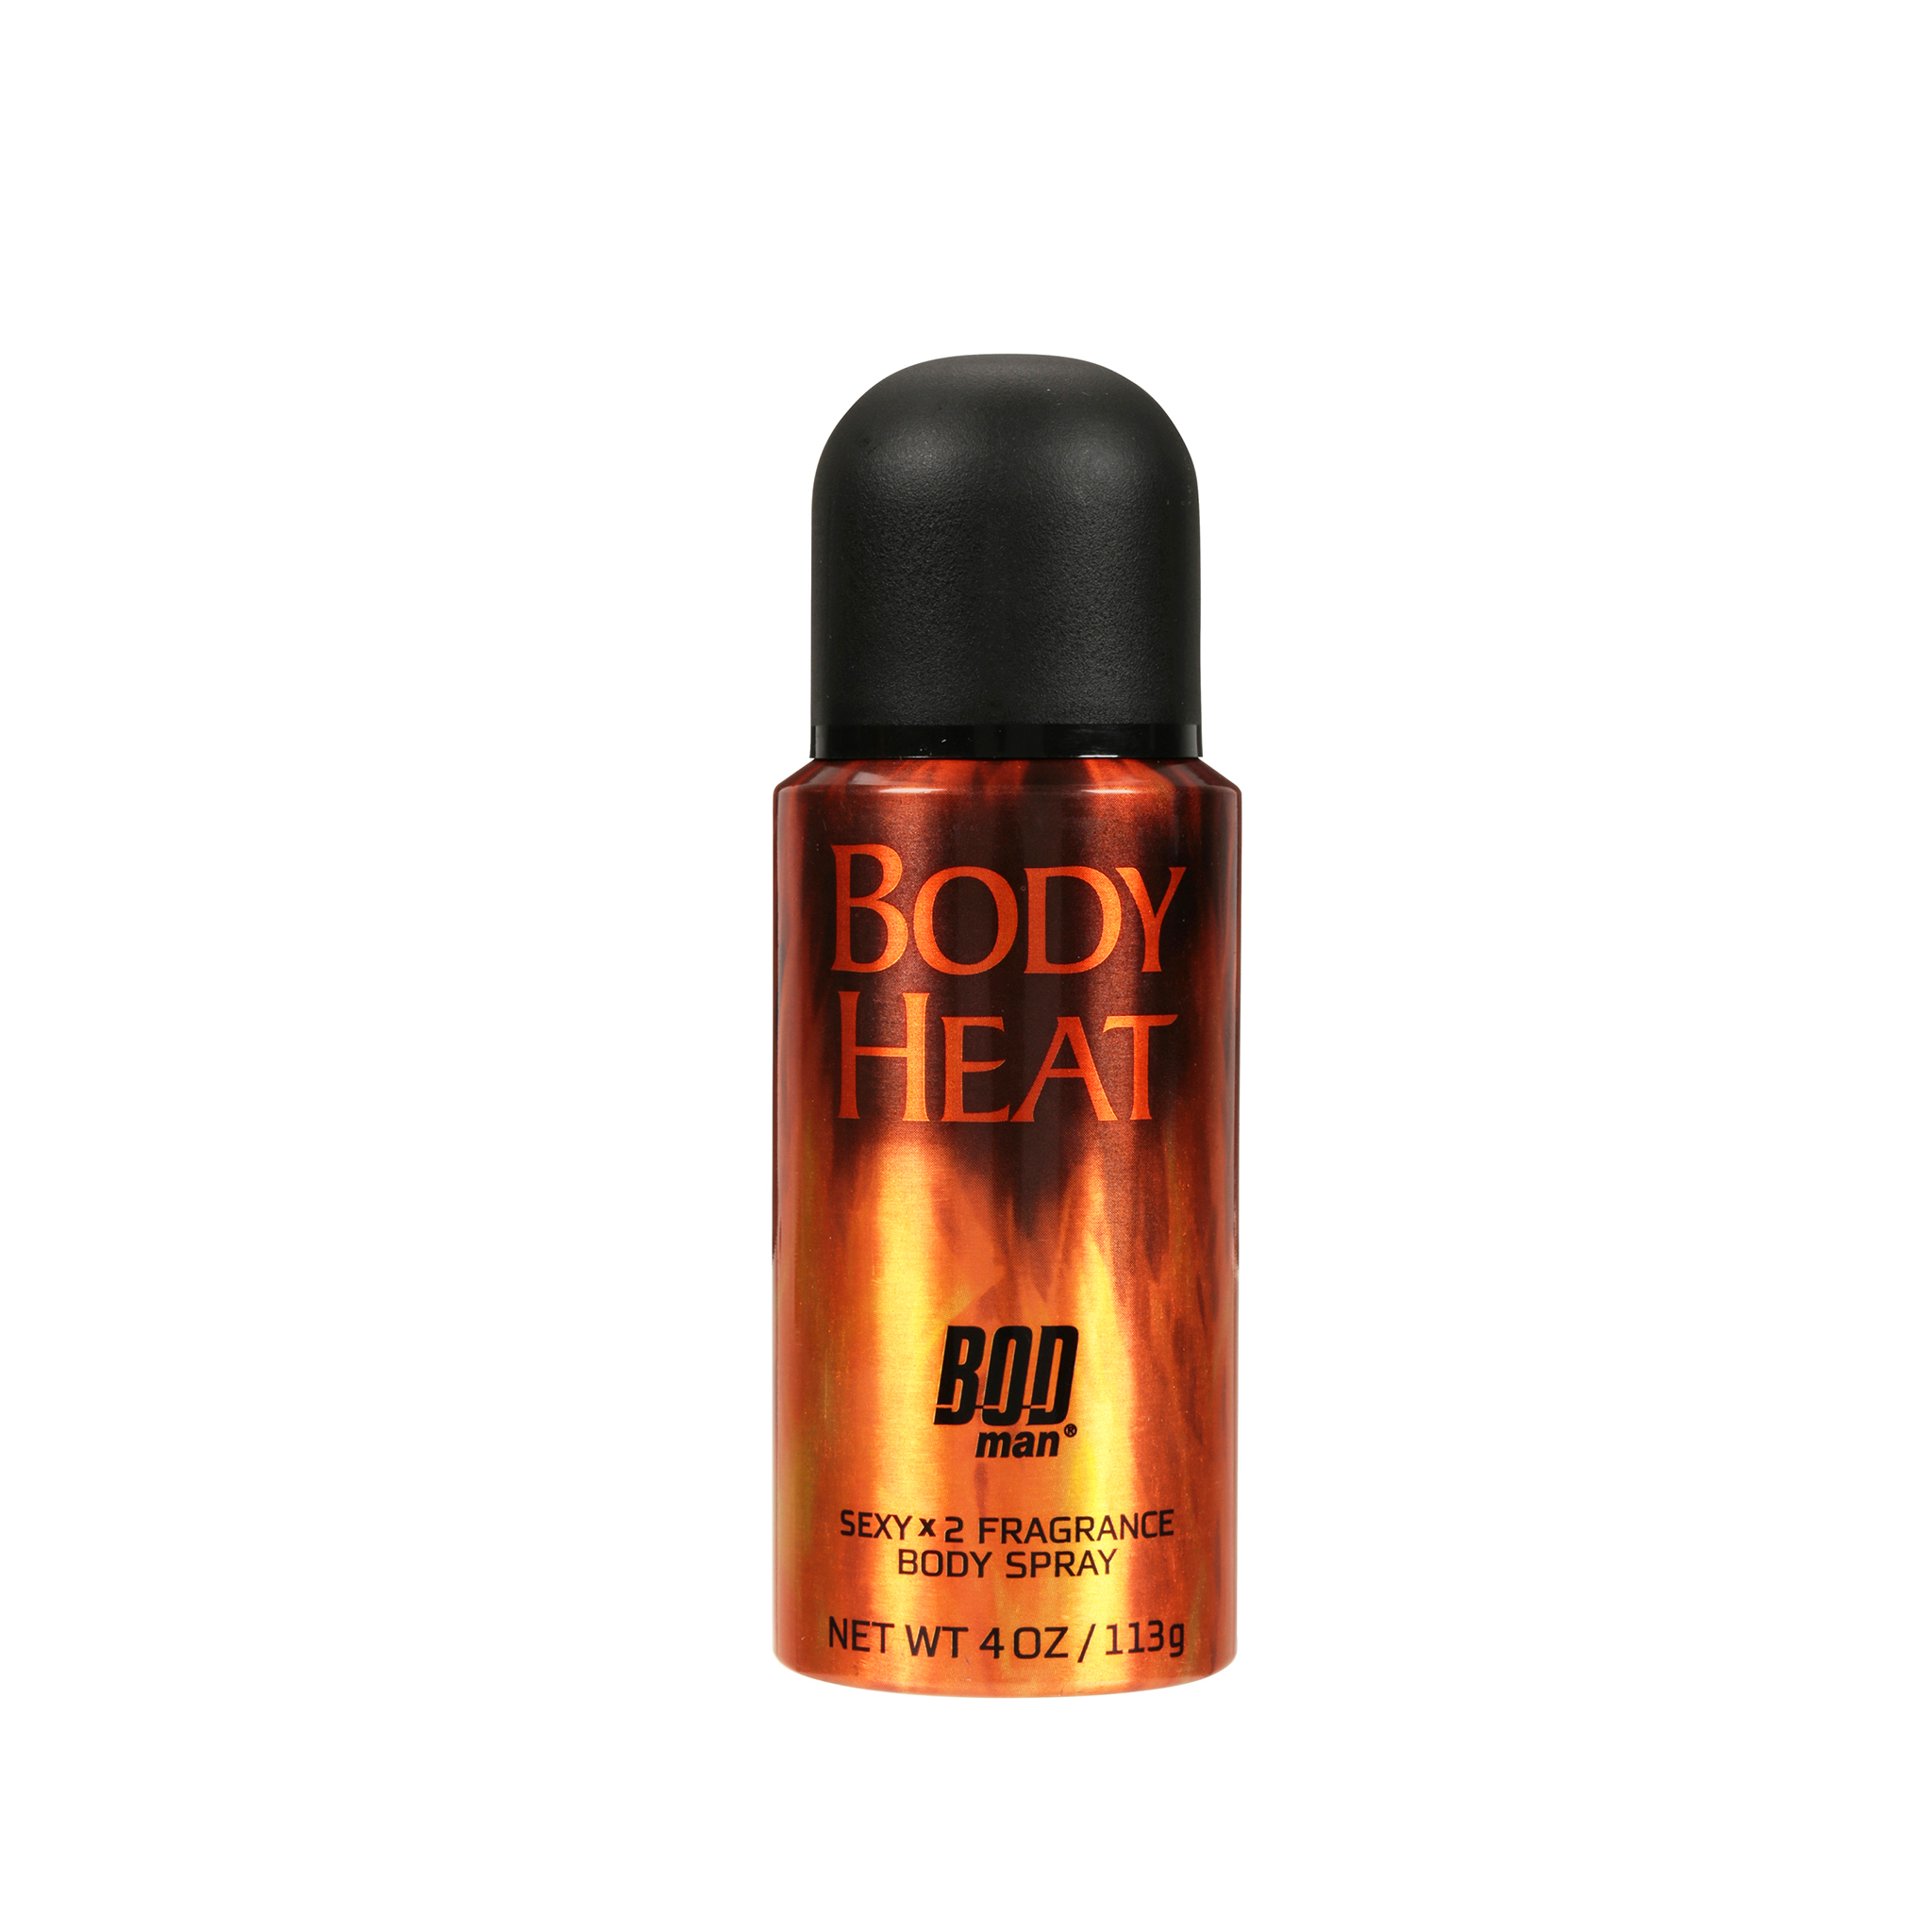 Bod Man Deodorant Body Spray Body Heat 4oz Jollys Pharmacy Online Store